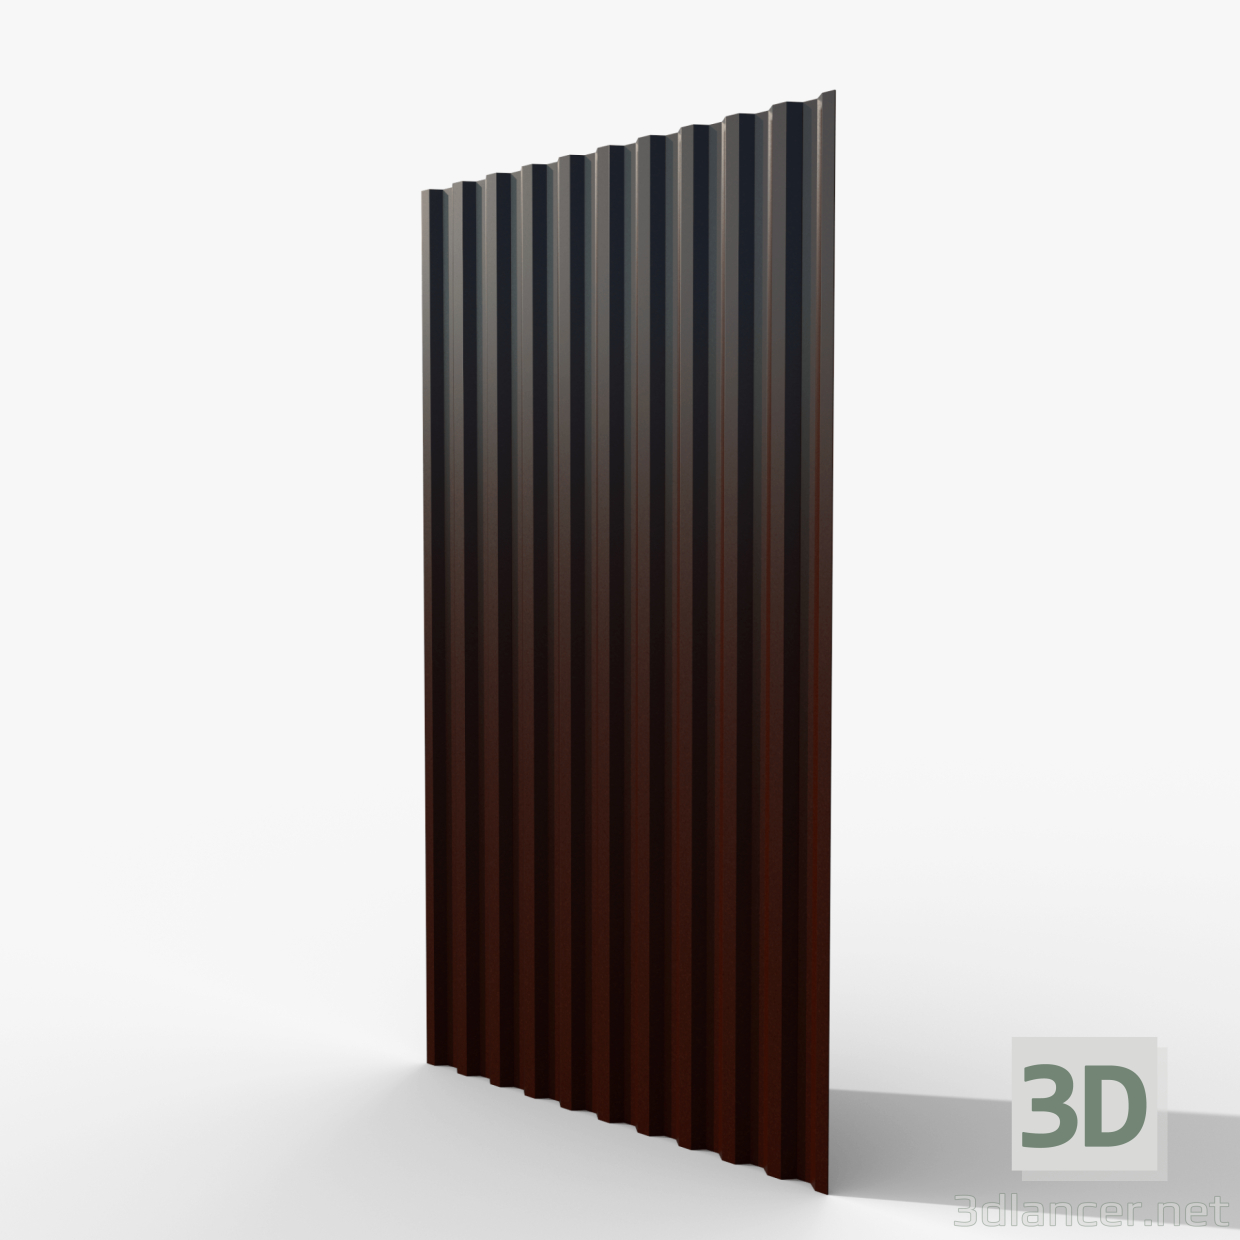 3D Profilli levha kahverengi modeli satın - render